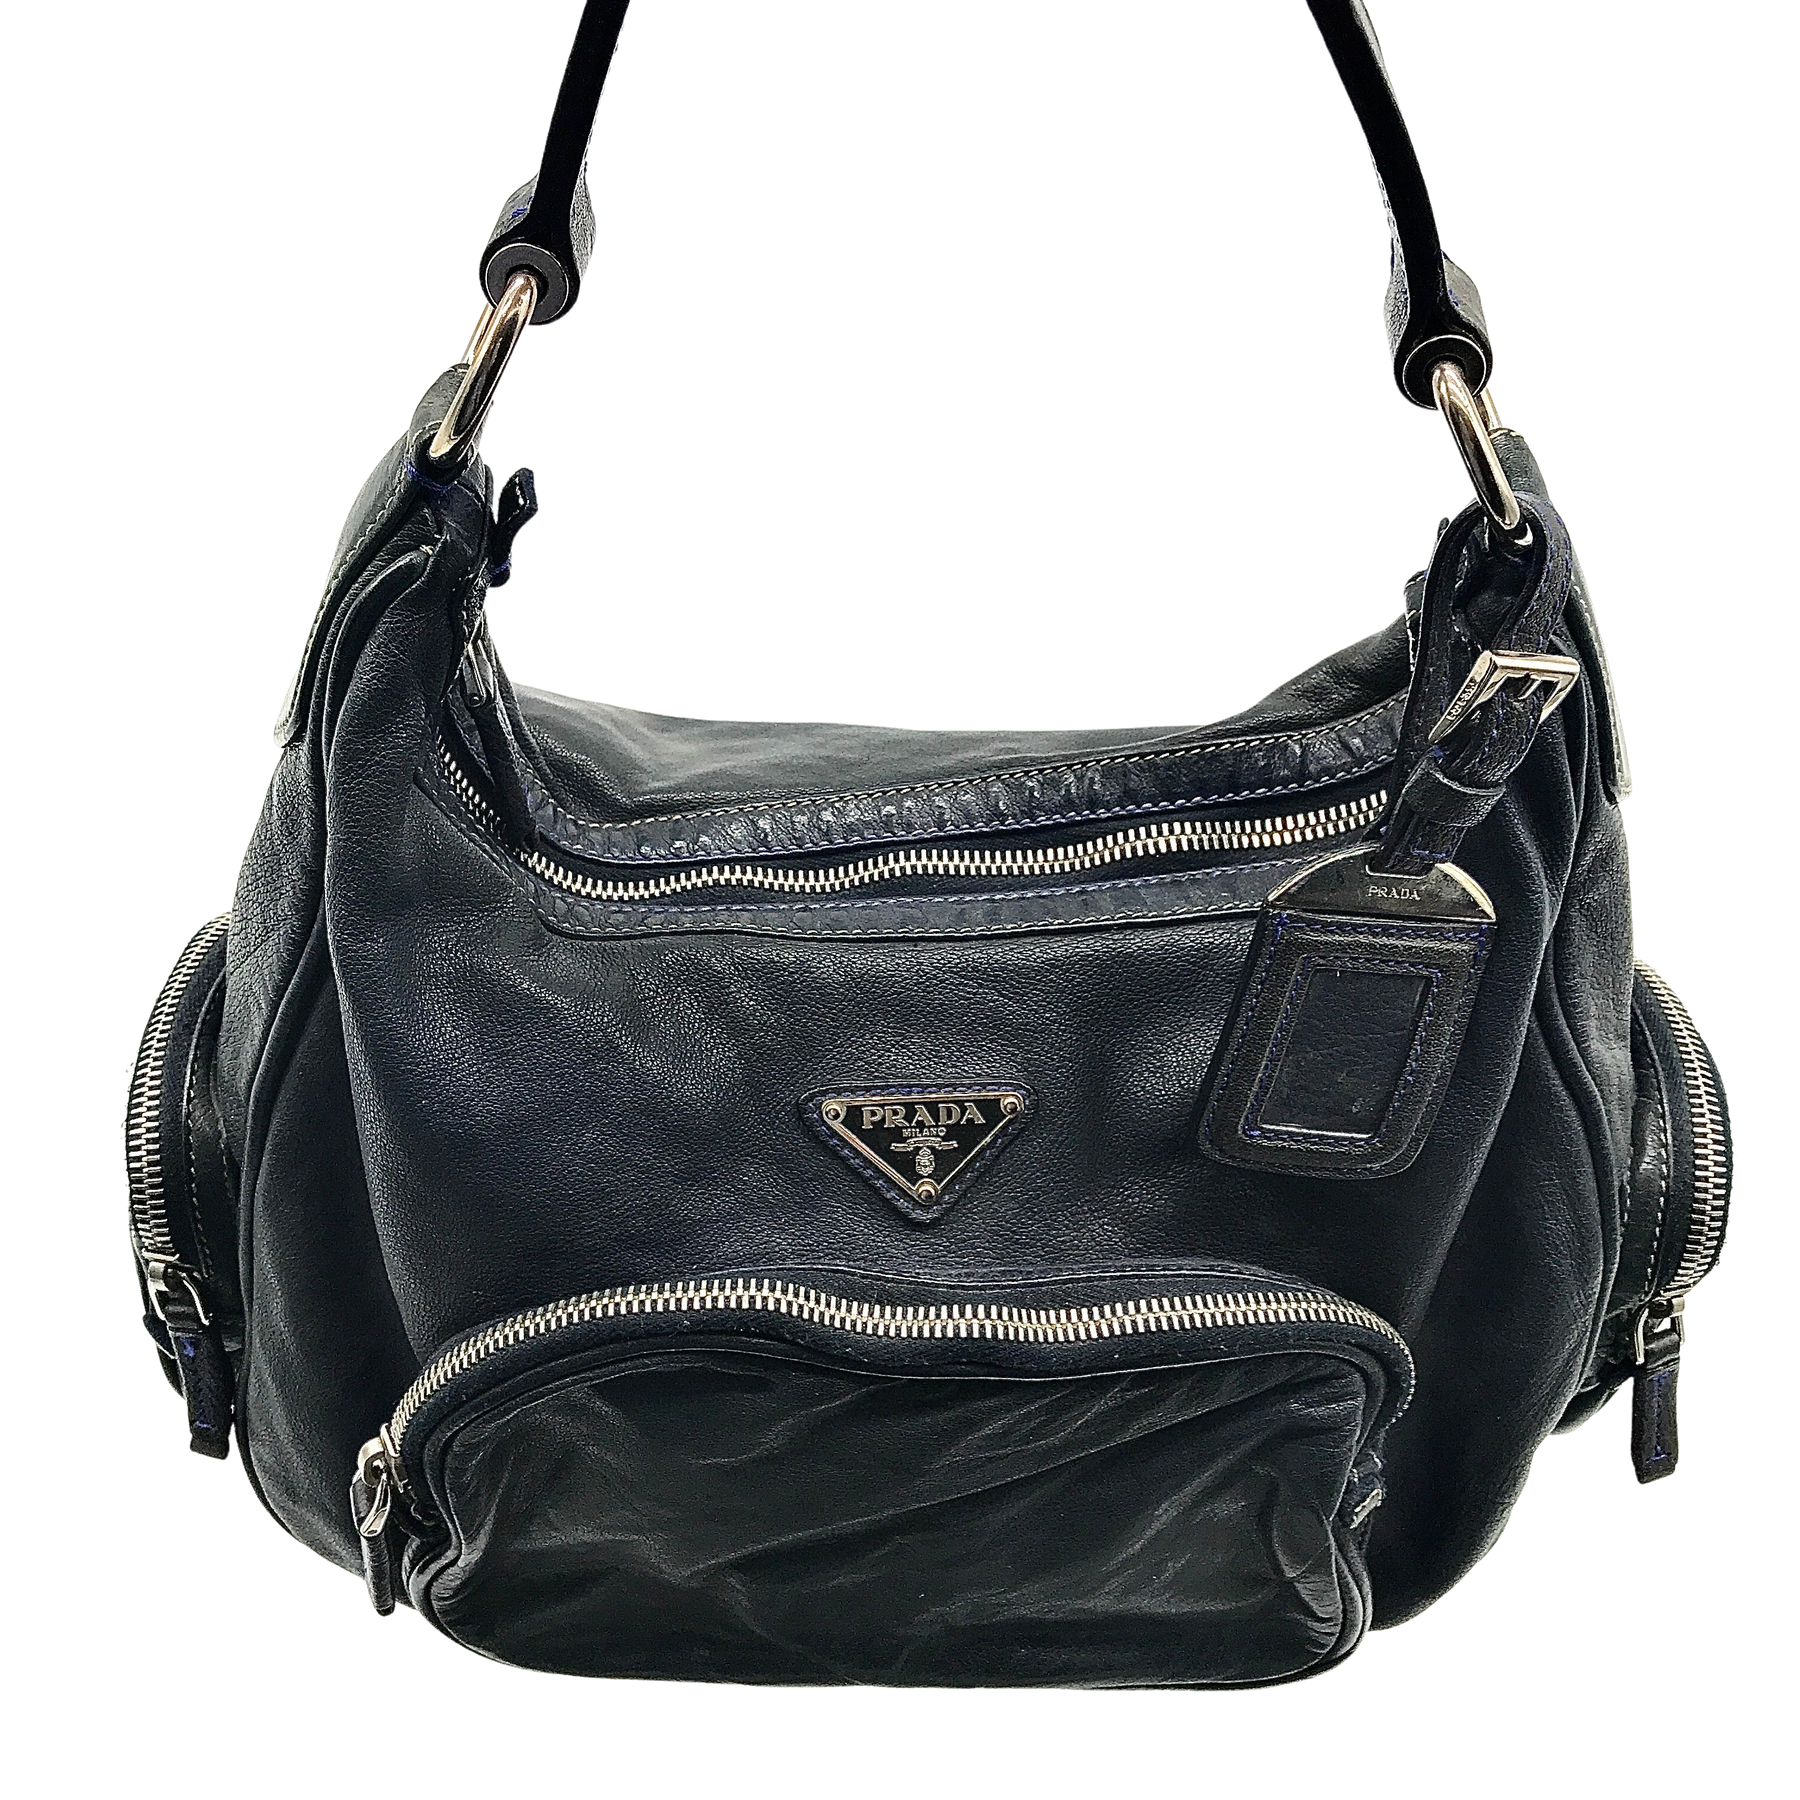 Vintage Prada leather shoulder bag - second wave vintage store